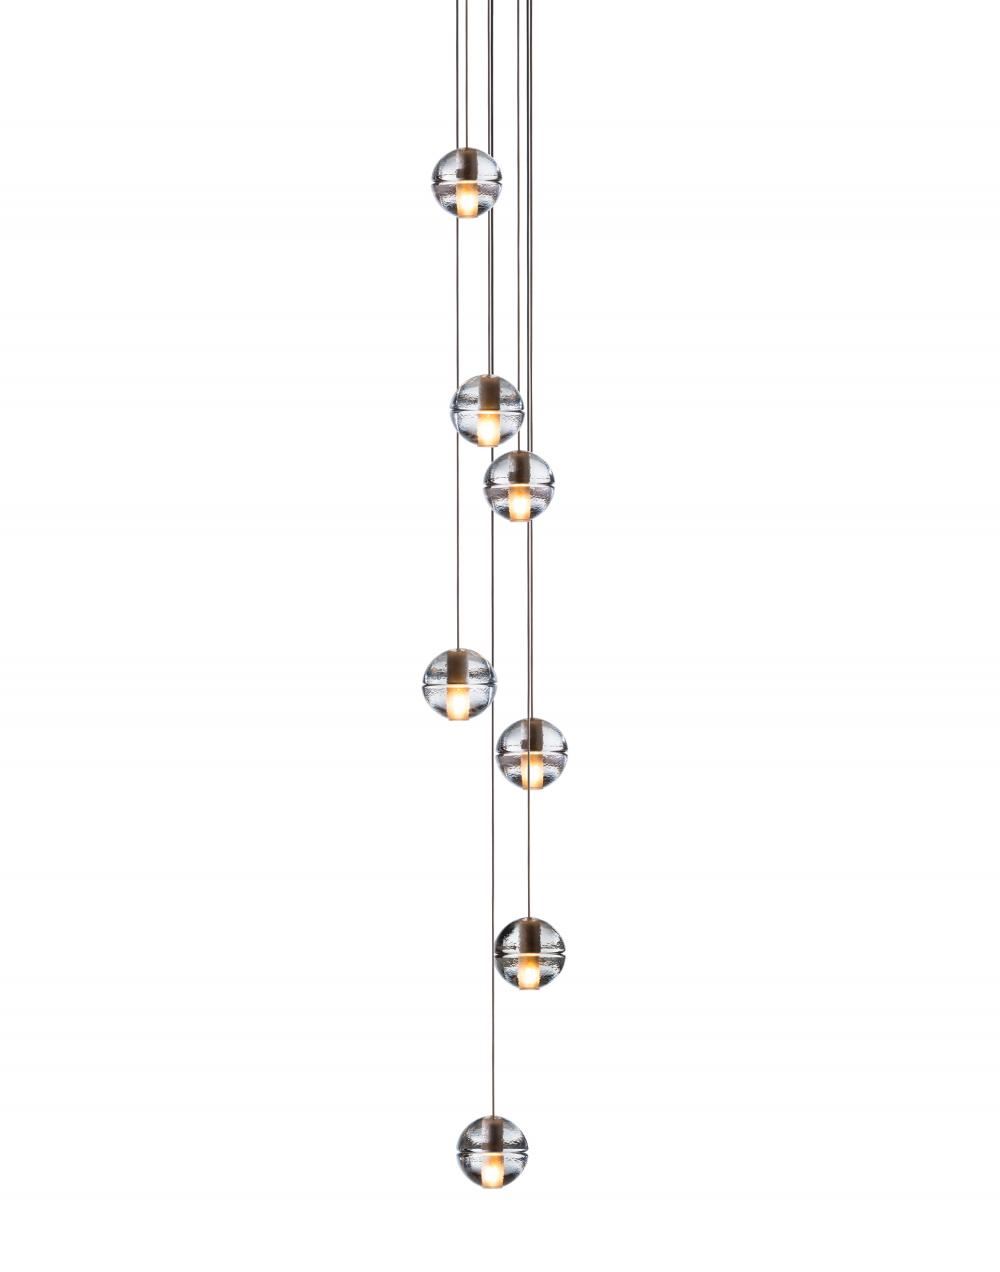 Bocci Series 14 Pendant 3 9 Pieces 7 Ball 10w Xenon Clear Designer Pendant Lighting